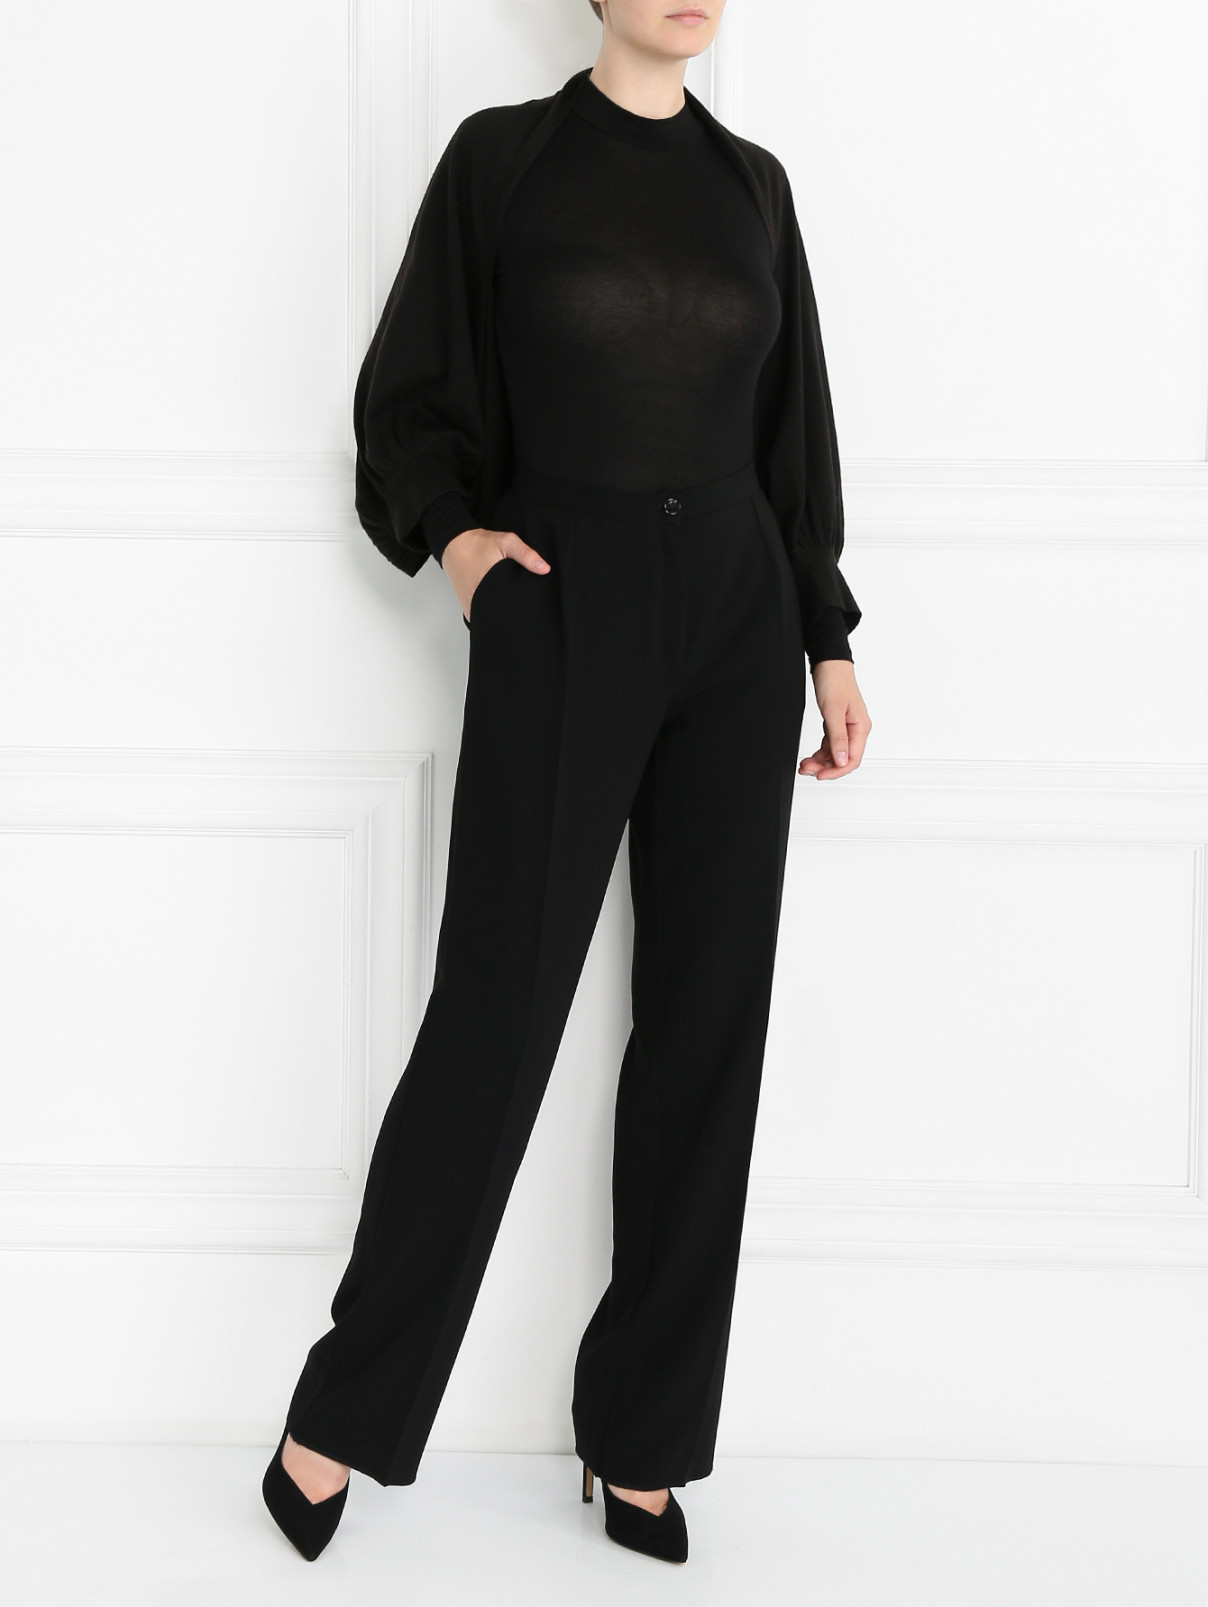 Кардиган из шерсти свободного кроя Marina Rinaldi  –  Модель Общий вид  – Цвет:  Черный